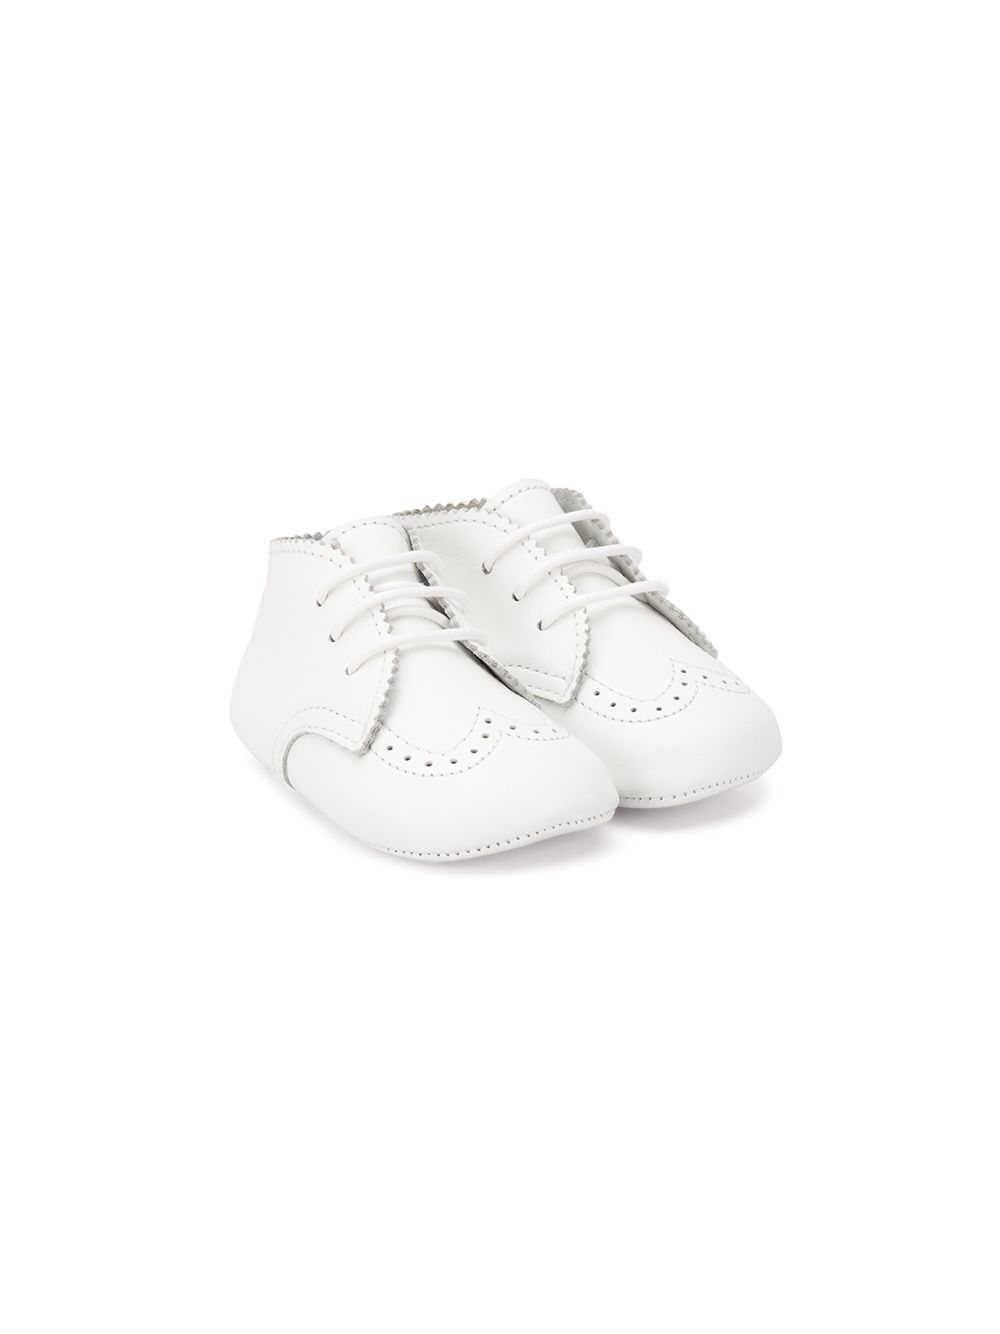 Chaussures bébé fille blanches